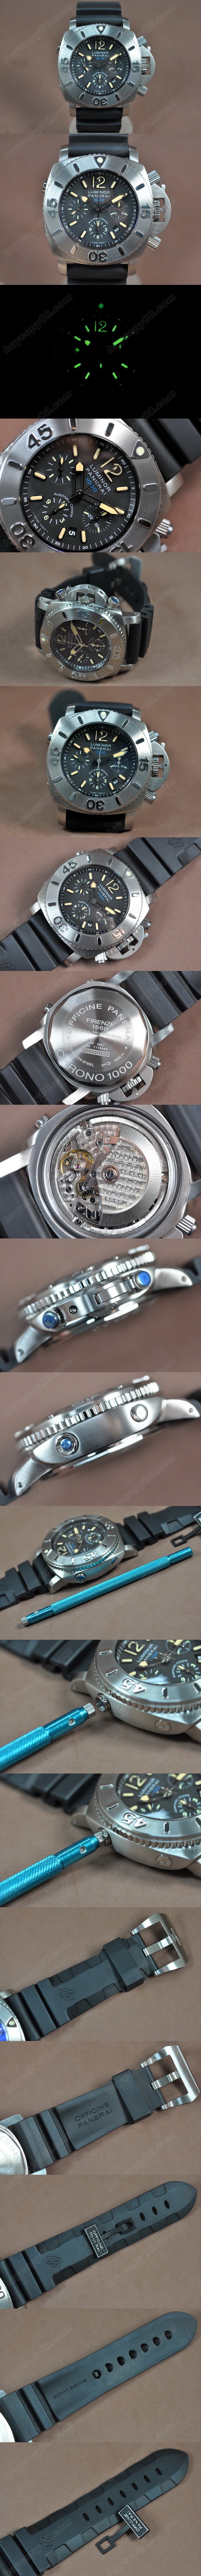 沛納海 Watches PAM187 G Submersible Chronograph 1:1 Ultimate Edition A-7753 自動機芯 搭 載 0